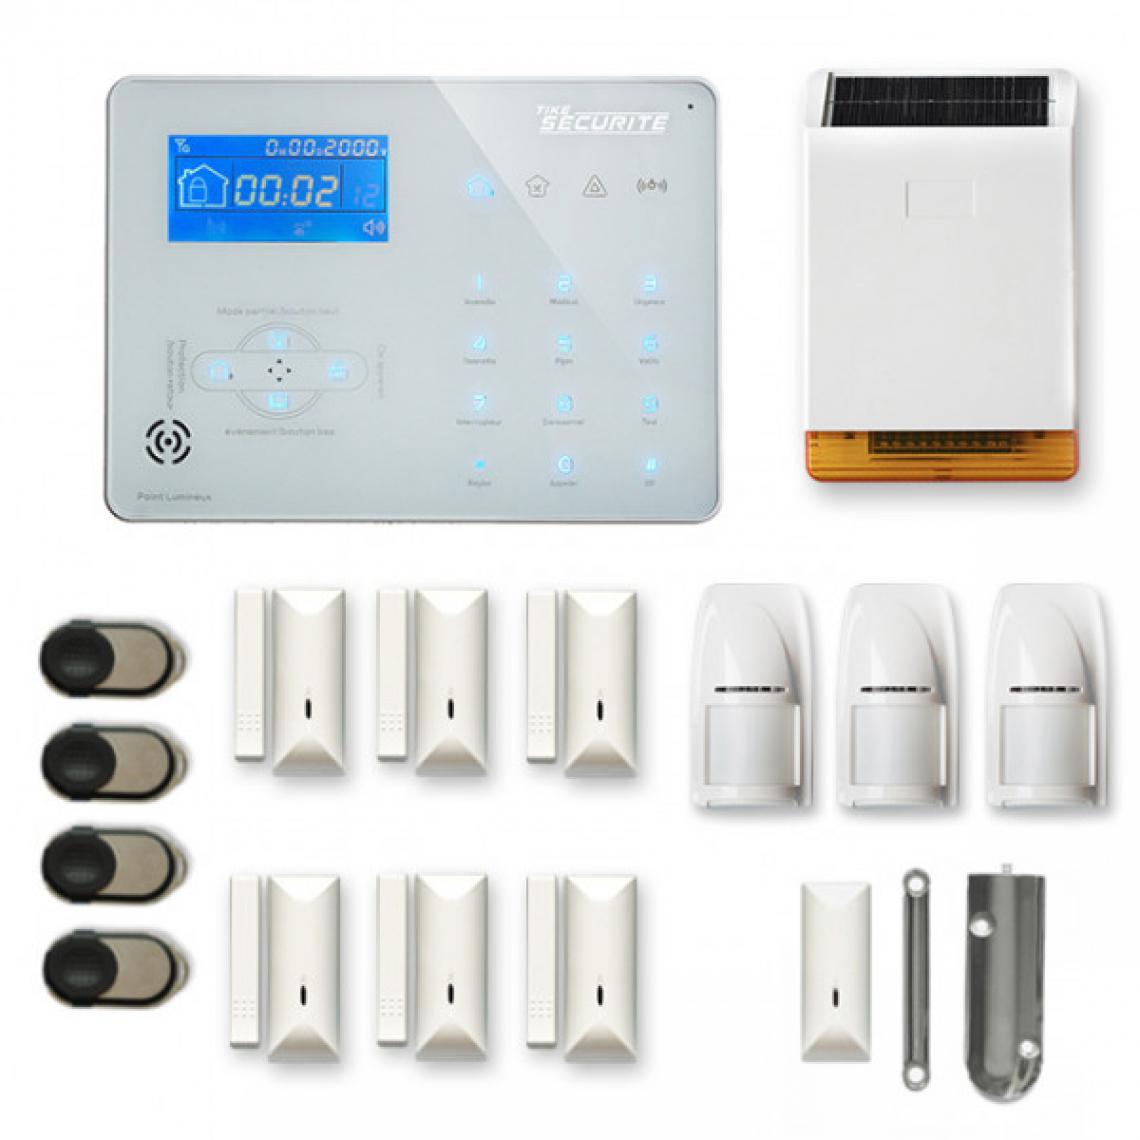 Tike Securite - Alarme maison sans fil ICE-B47 Compatible Box internet - Alarme connectée